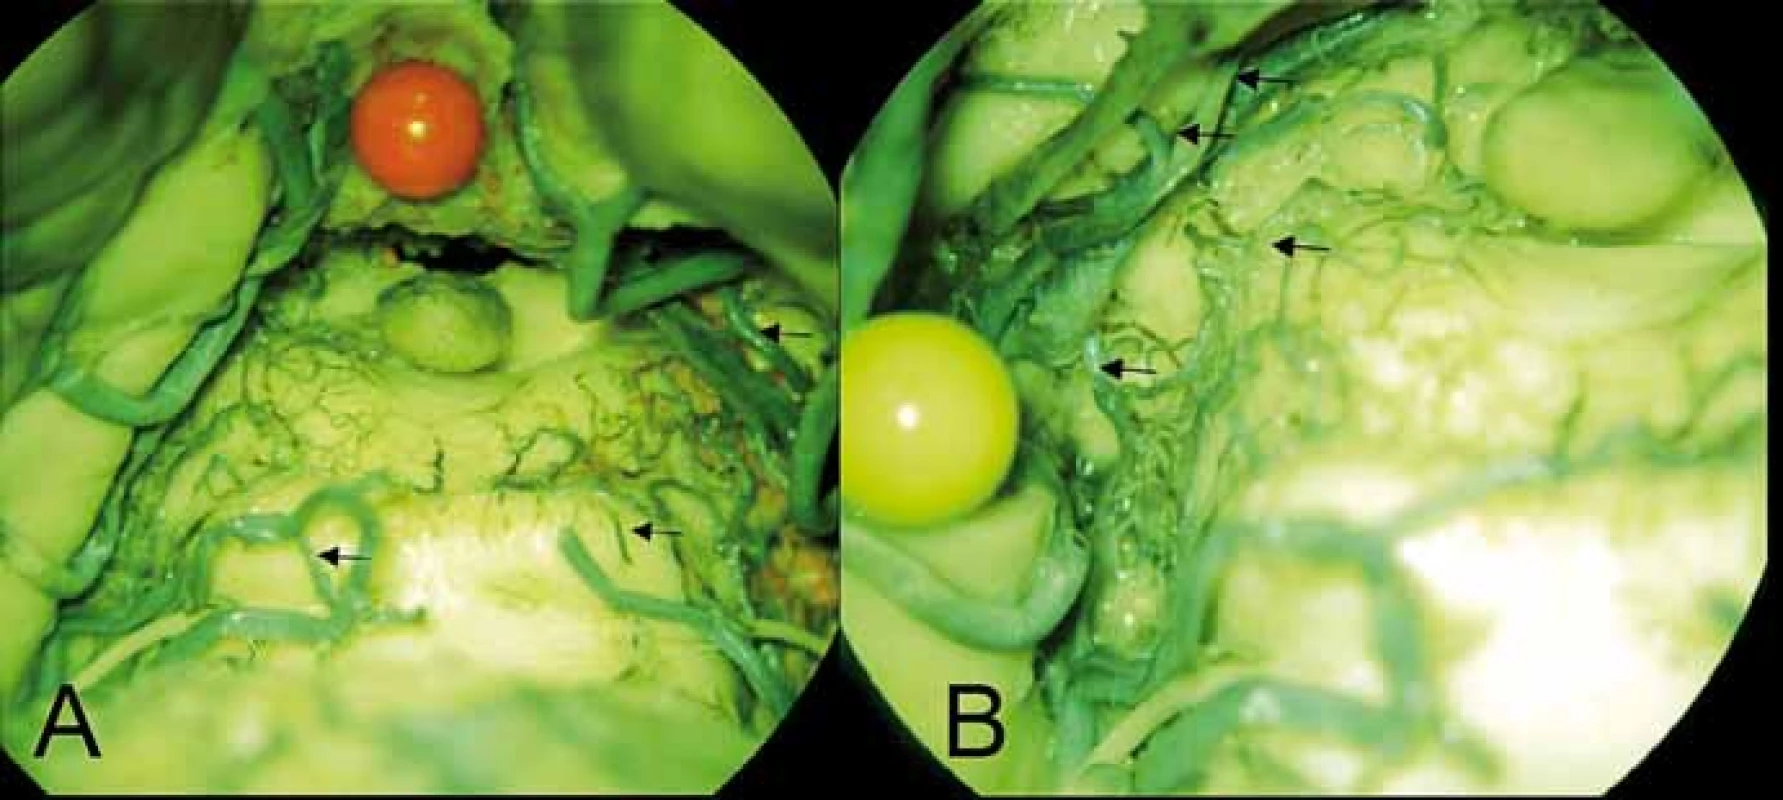 (A) Perforující větvička (šipka) pro dolní colliculus vlevo odstupují z mediálního
terminálního trunku arteria cerebelli superior vlevo, vpravo ekvivalent z rete collicullare
inferius (šipka) z arteria choroidea posterior medialis (šipka kraniálně). (B) Arteriální
síť colliculus superior vlevo z a. collicularis (šipka dole) a z arteria choroidea posterior
medialis, ze které odstupuje i talamický perforátor (2 šipky nahoře).<br>
Fig. 5. (A) Perforating branch (arrow) for the left inferior colliculus arising from the medial
terminal segment of the left superior cerebellar artery, on the right side similar to the branch
of the rete colliculare inferius (arrow) from the medial posterior choroidal artery (upper
arrow). (B) Arterial plexus of the left superior colliculus arising from the collicular artery
(lower arrow) and the from medial posterior choroidal artery. Two thalamic perforators are
also visible arising from the medial posterior choroidal artery (2 upper arrows).